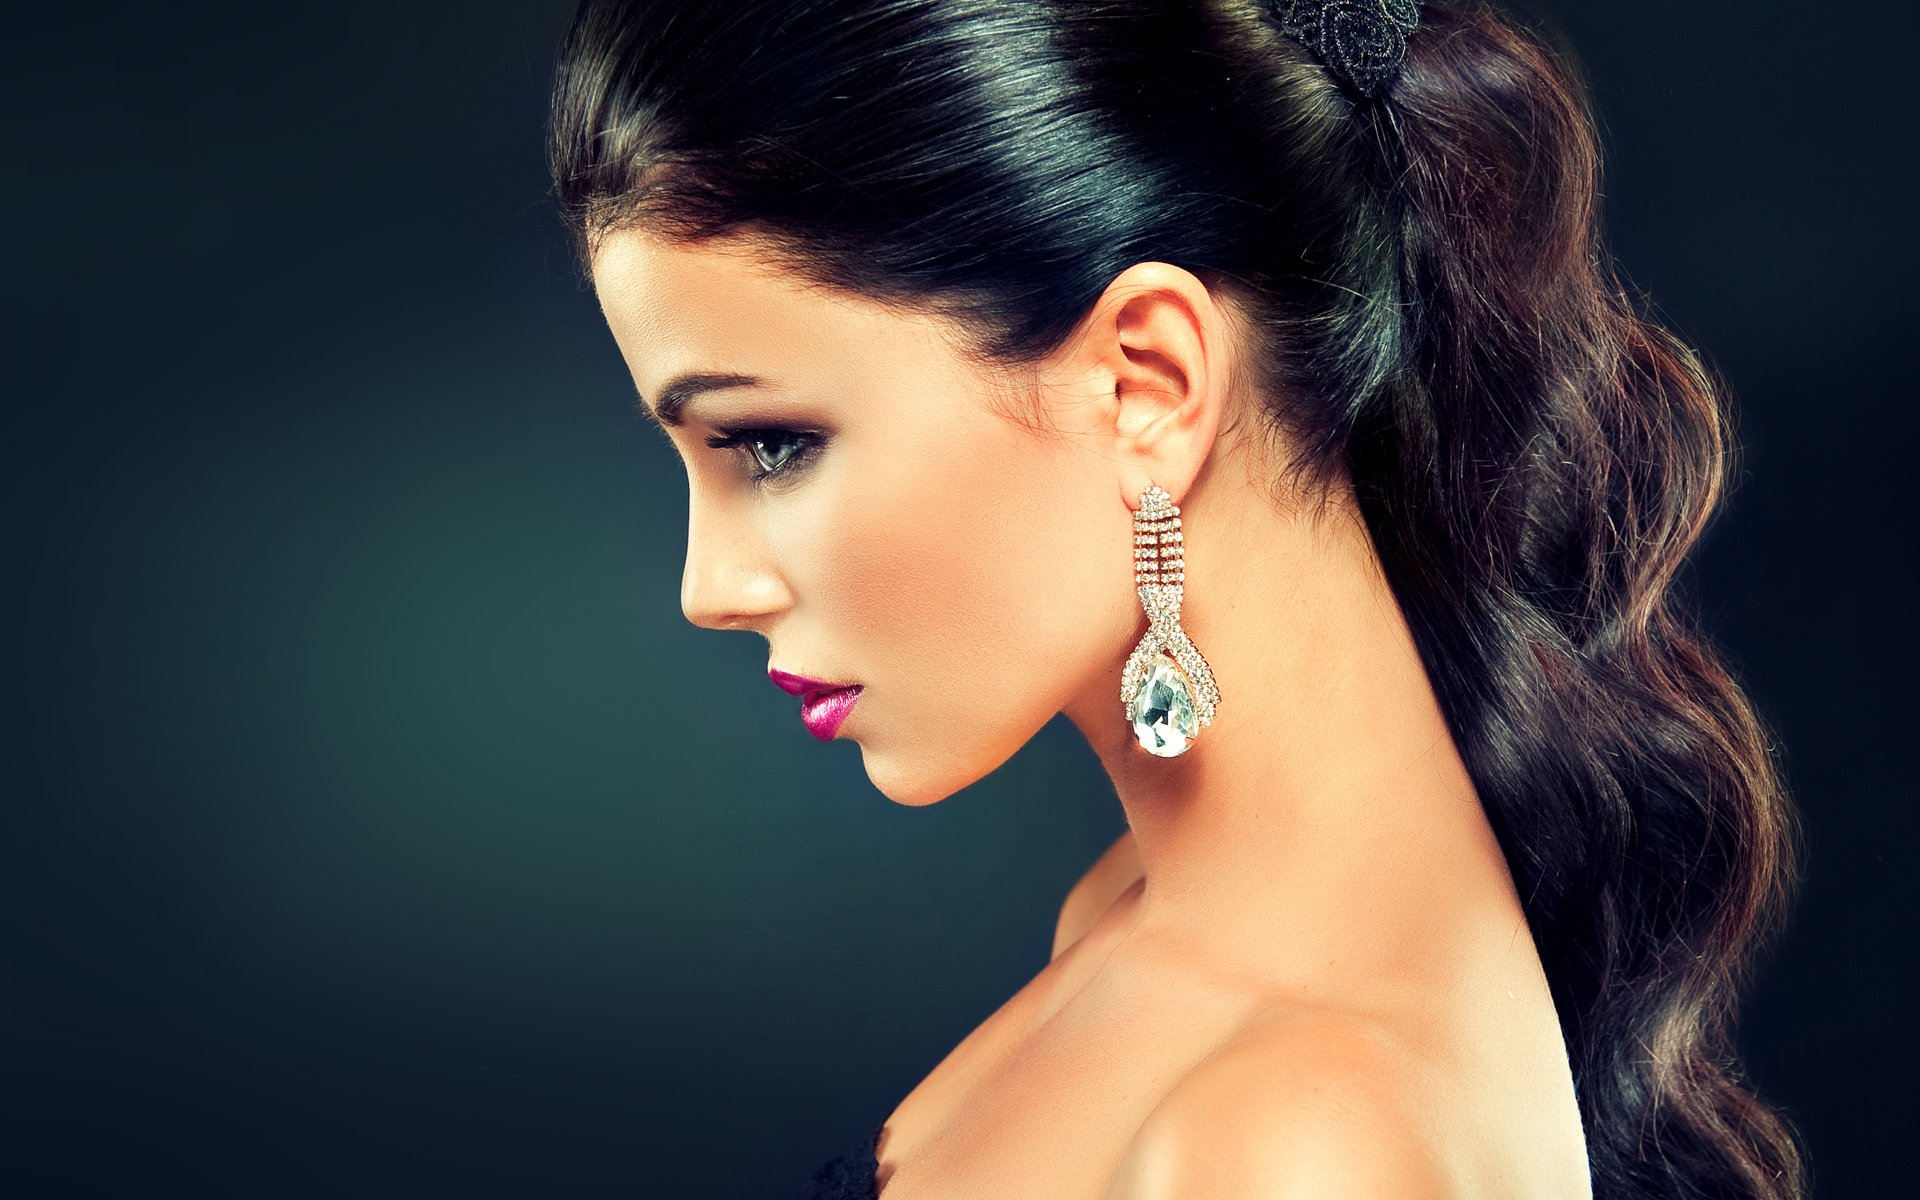 Download Face Profile Earrings Makeup Model Woman Brunette Hd Wallpaper 4673